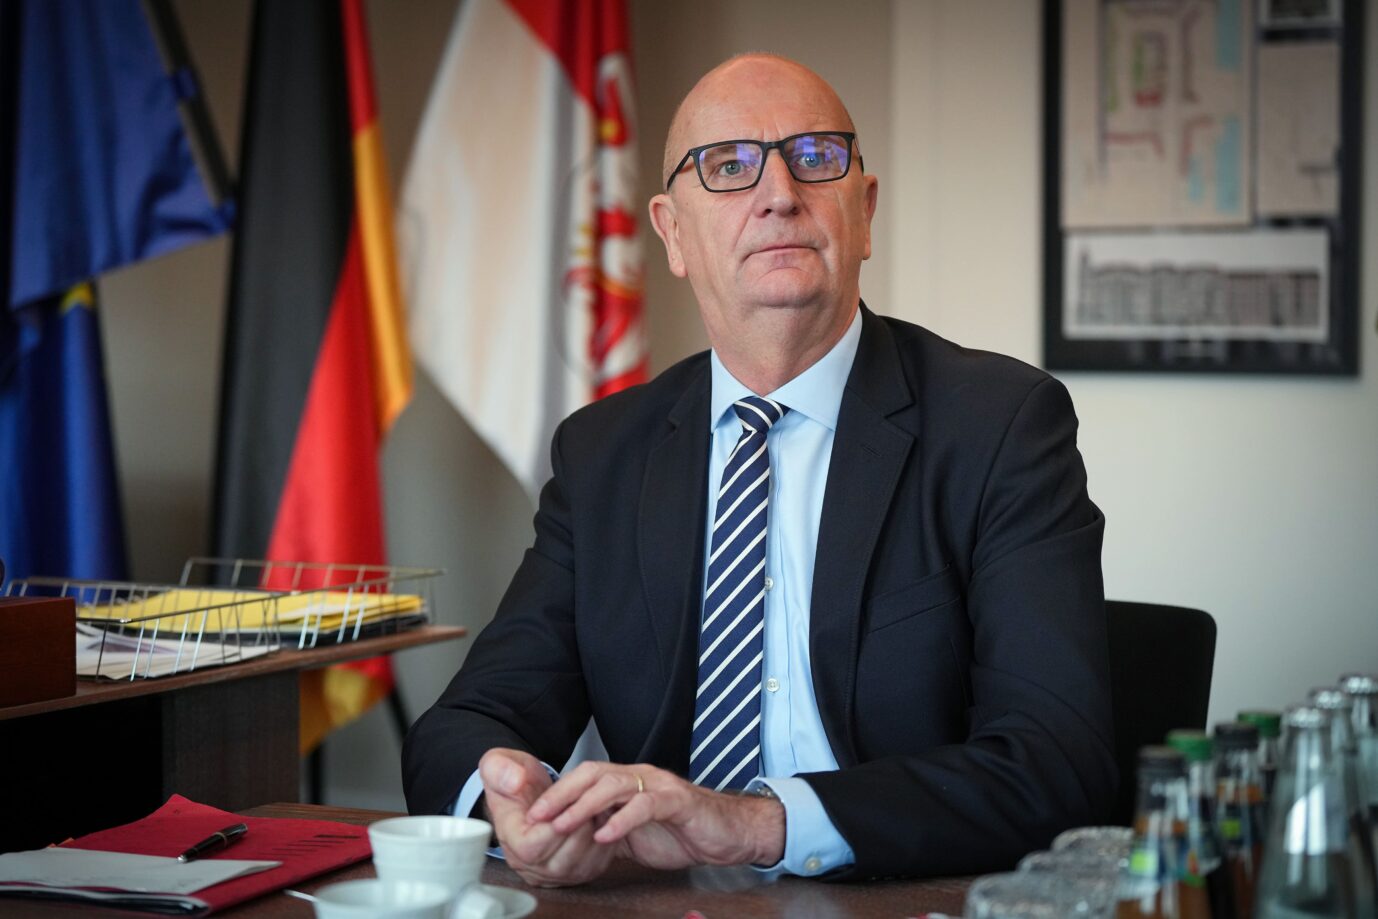 Brandenburgs Ministerpräsident Dietmar Woidke will die erneute Erhöhung der GEZ-Zwangsgebühr blockieren.